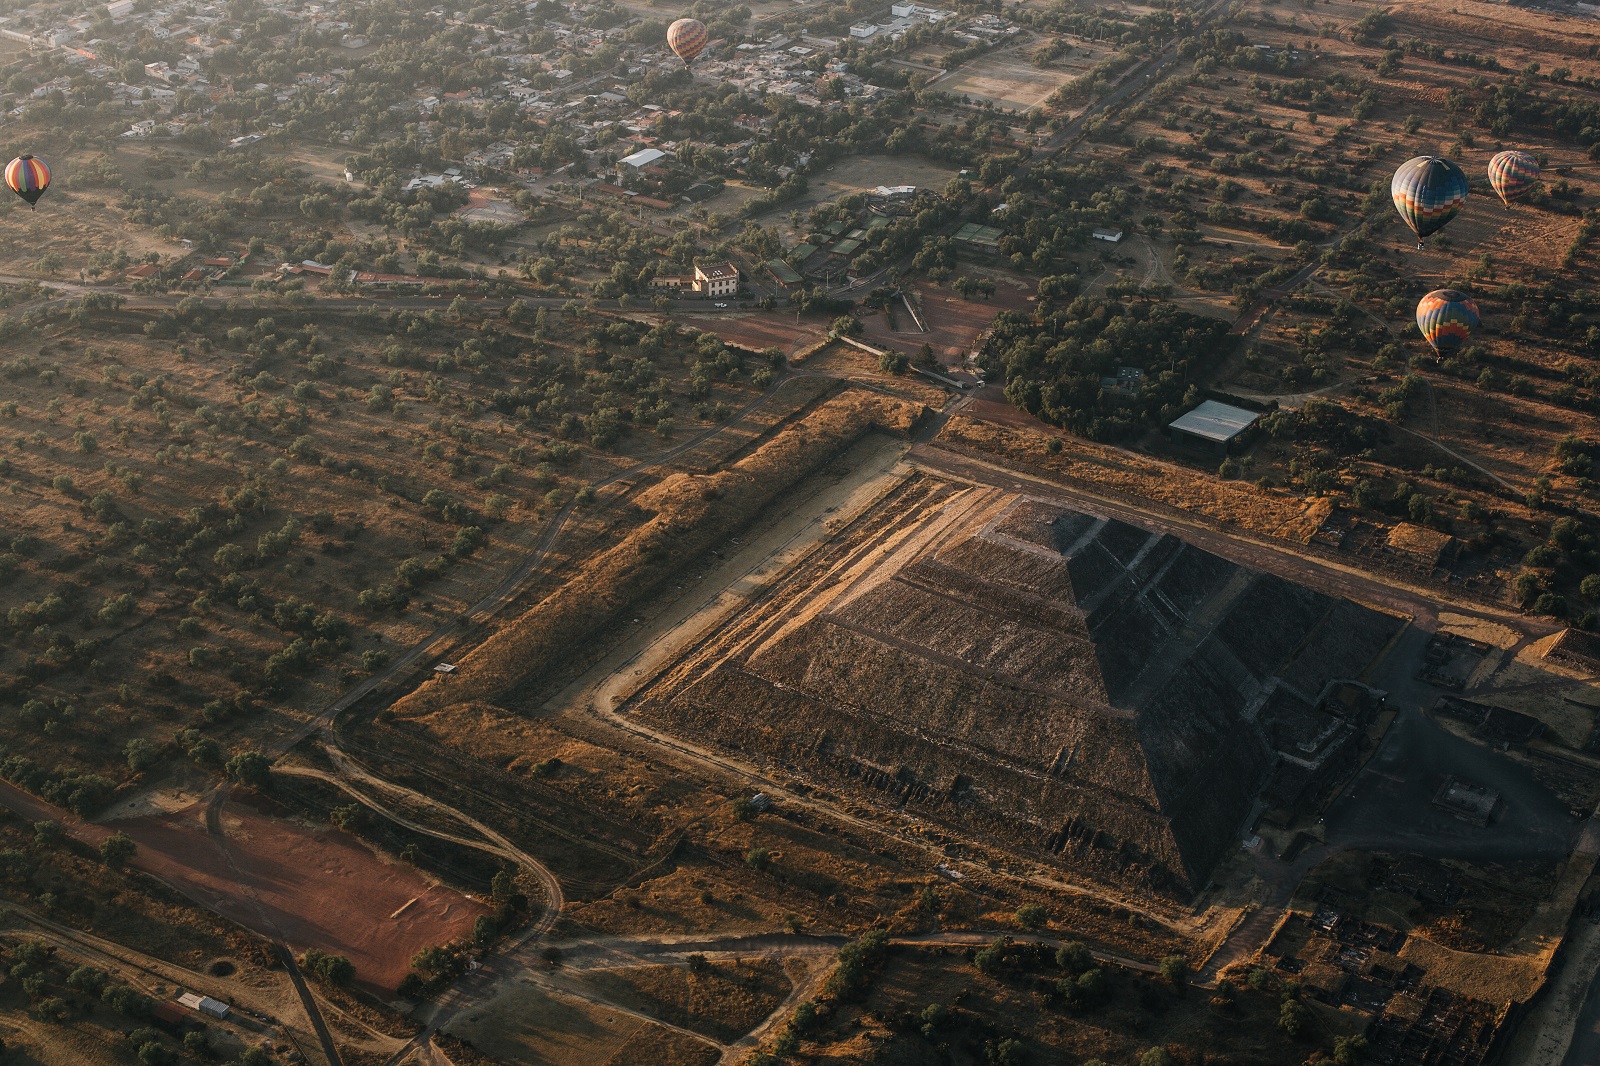 Vista aérea de la ciudad de Teotihuacan y sus alrededores. Shutterstock